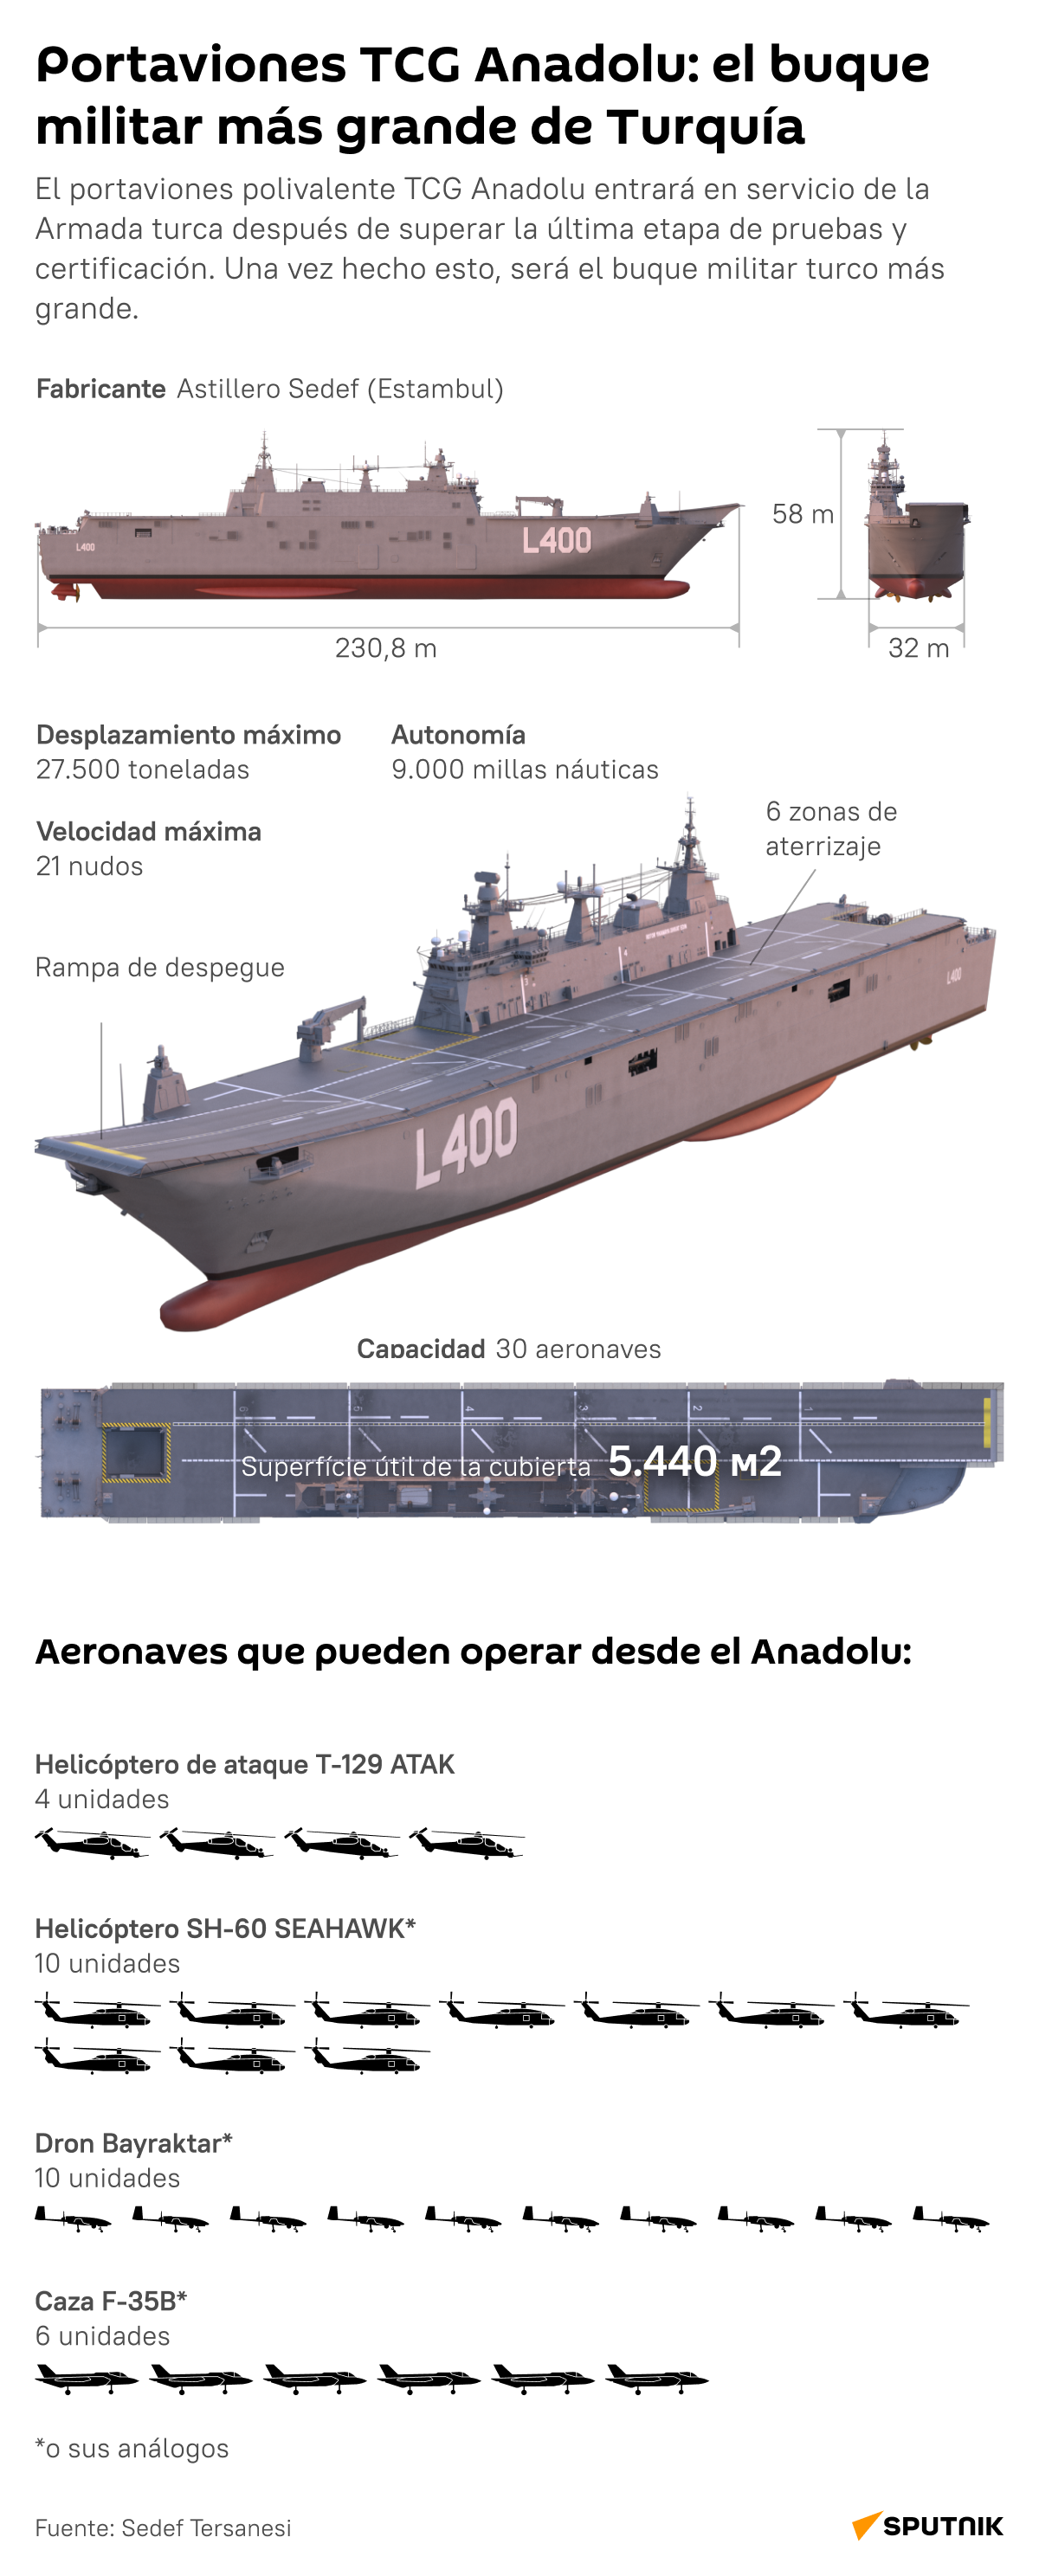 Conoce el portaviones TCG Anadolu: el buque militar más grande de Turquía - Sputnik Mundo